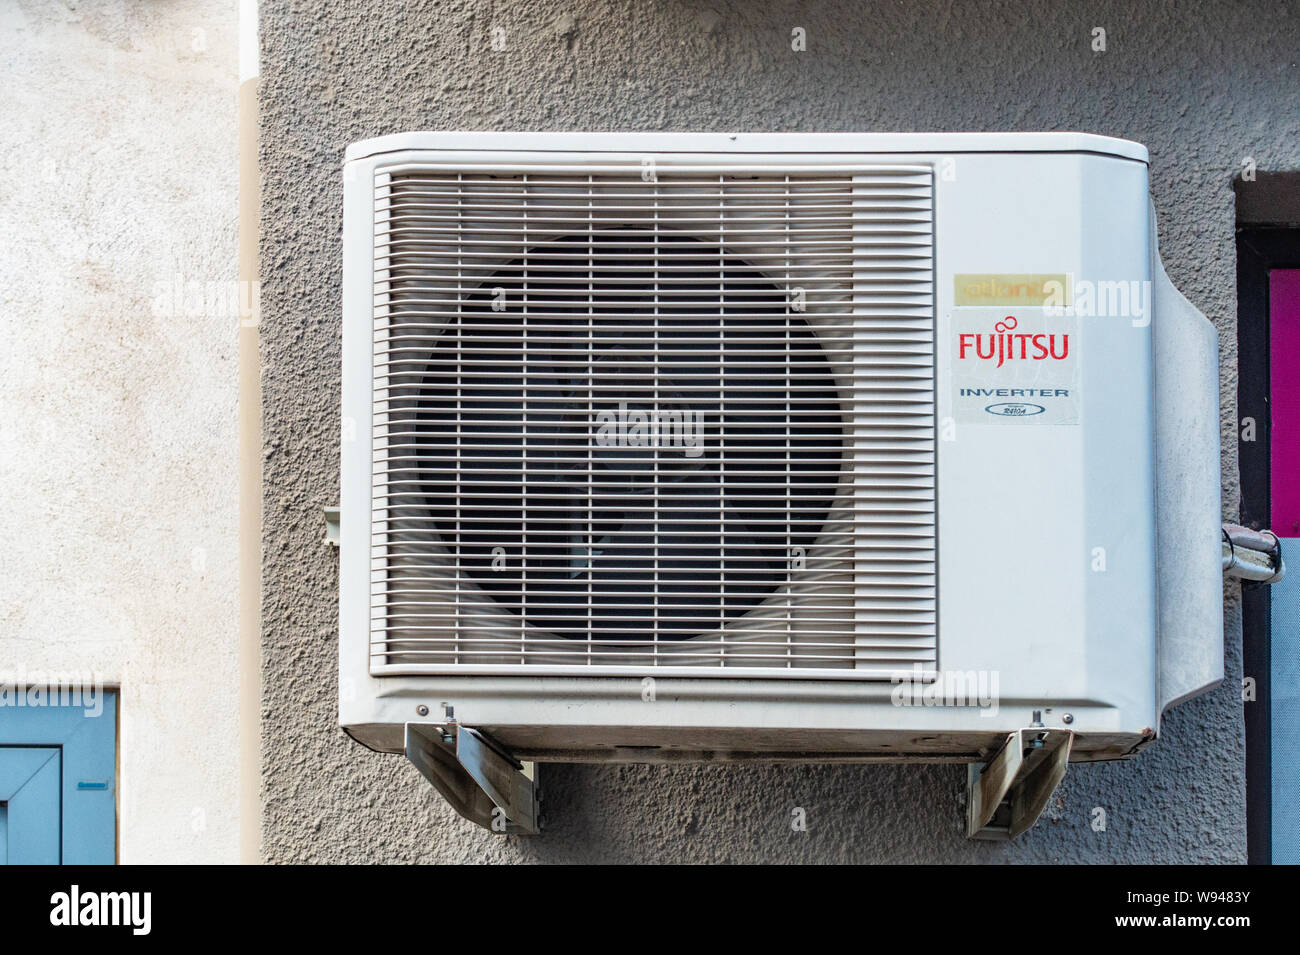 Unité de climatisation Fujitsu sur l'extérieur du mur de bureau Photo Stock  - Alamy